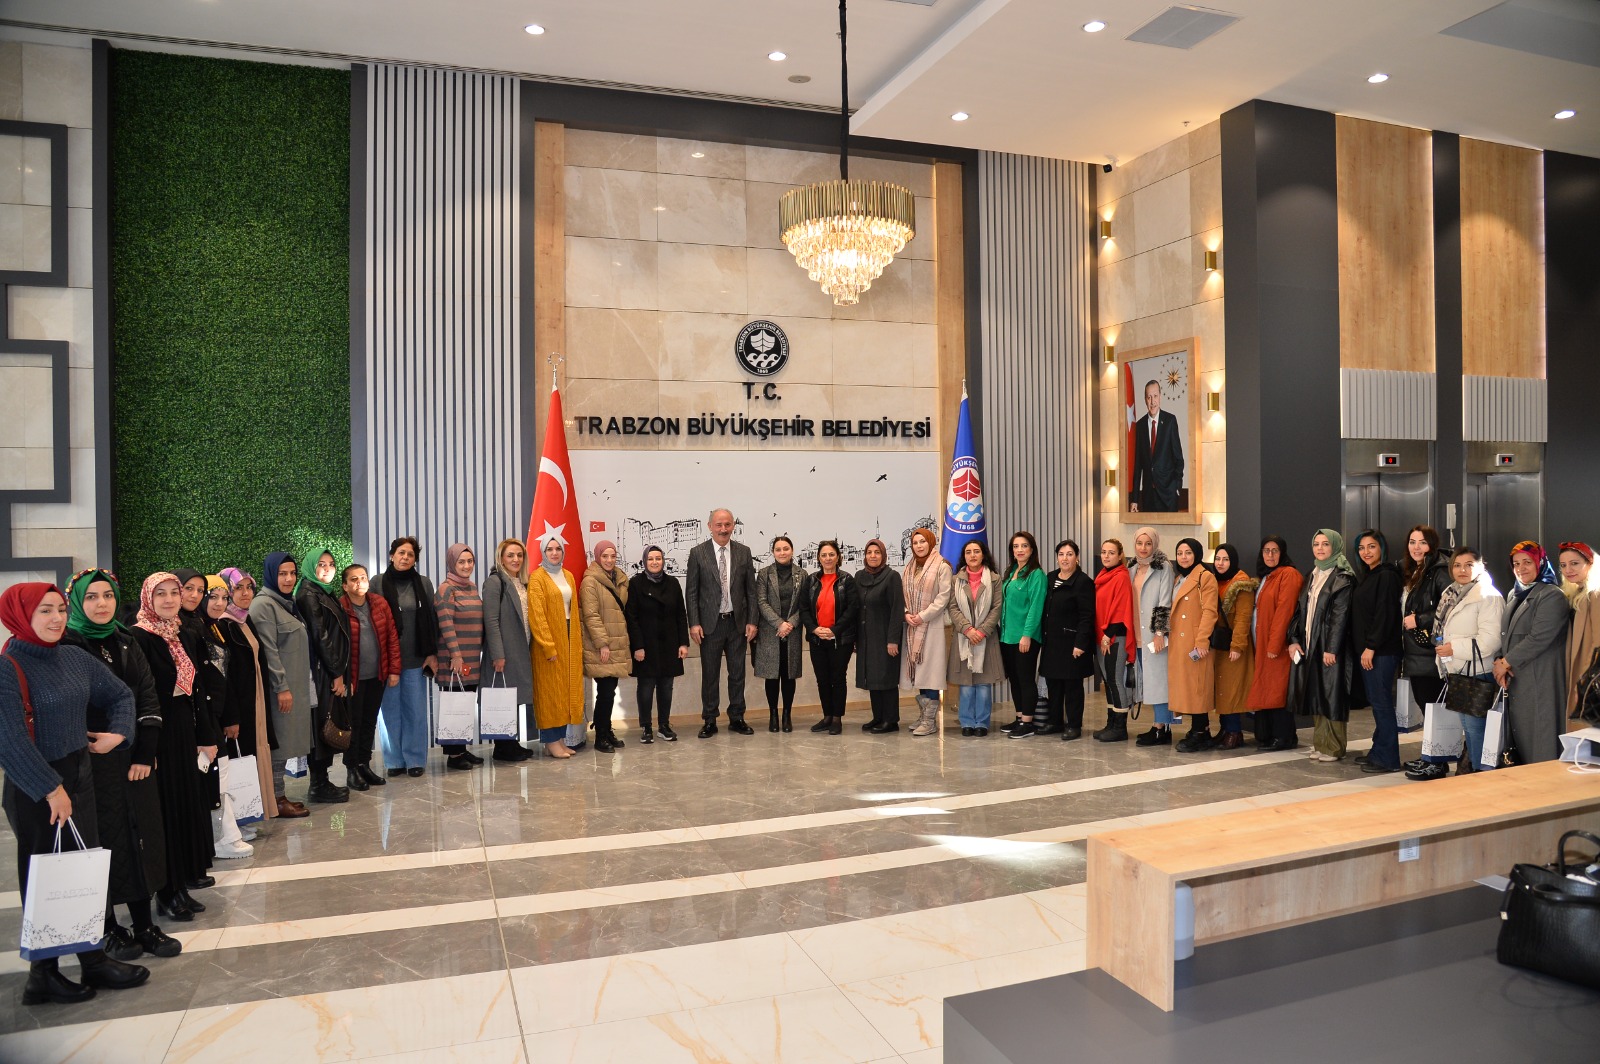 Diyarbakırlı kadınlar Trabzon Büyükşehir Belediyesi'ni ziyaret etti